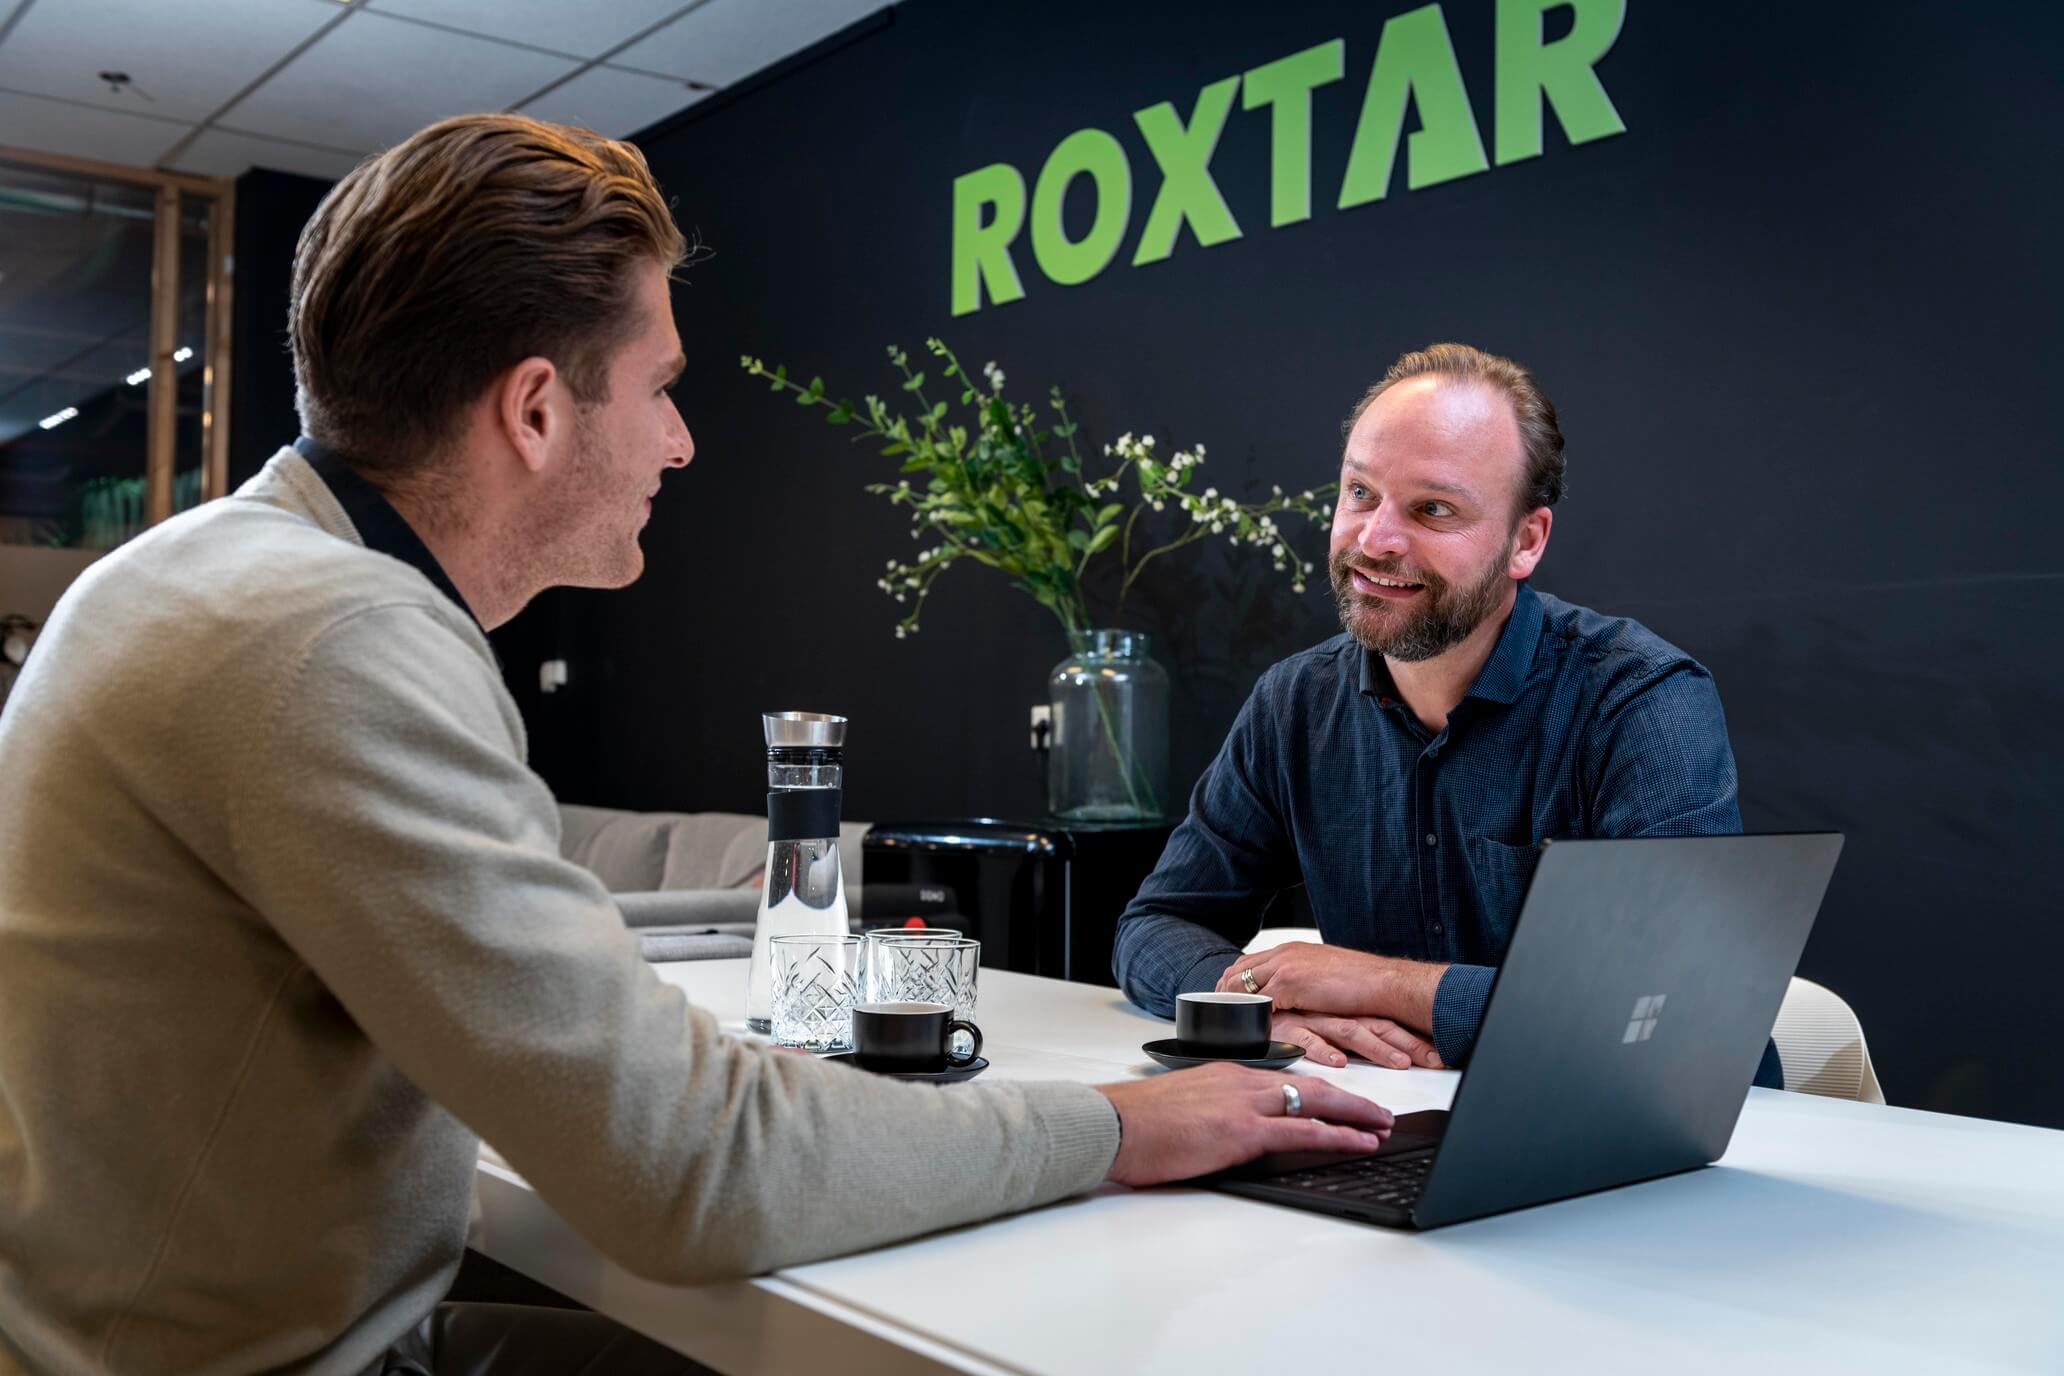 ROXTAR Online Marketing